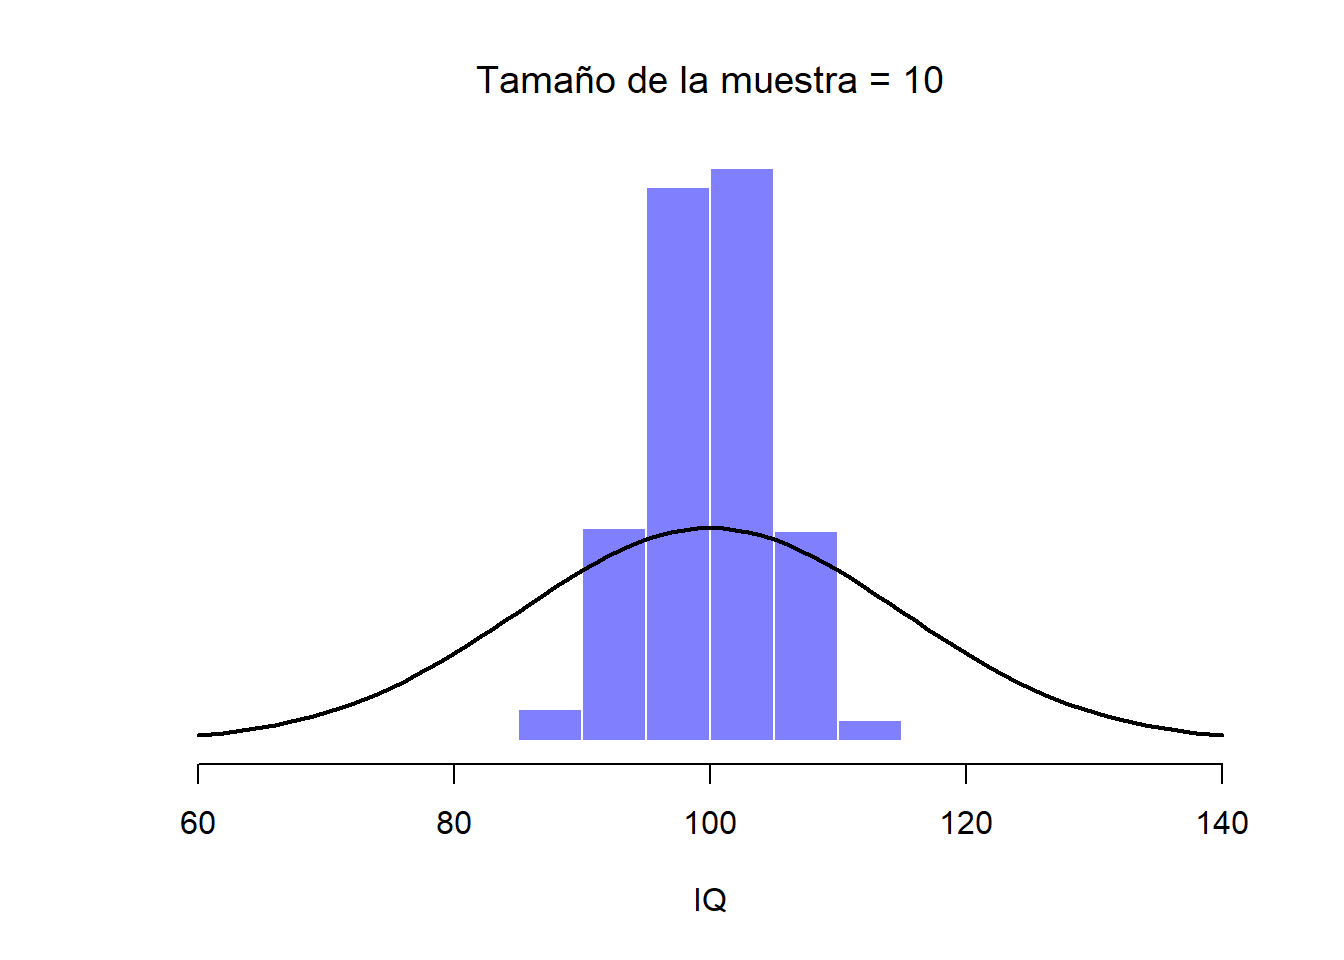 Cuando el tamaño de la muestra es de 10 podemos ver que la distribución muestral de la media tiende a organizarse alrededor de la media (real) de la población.